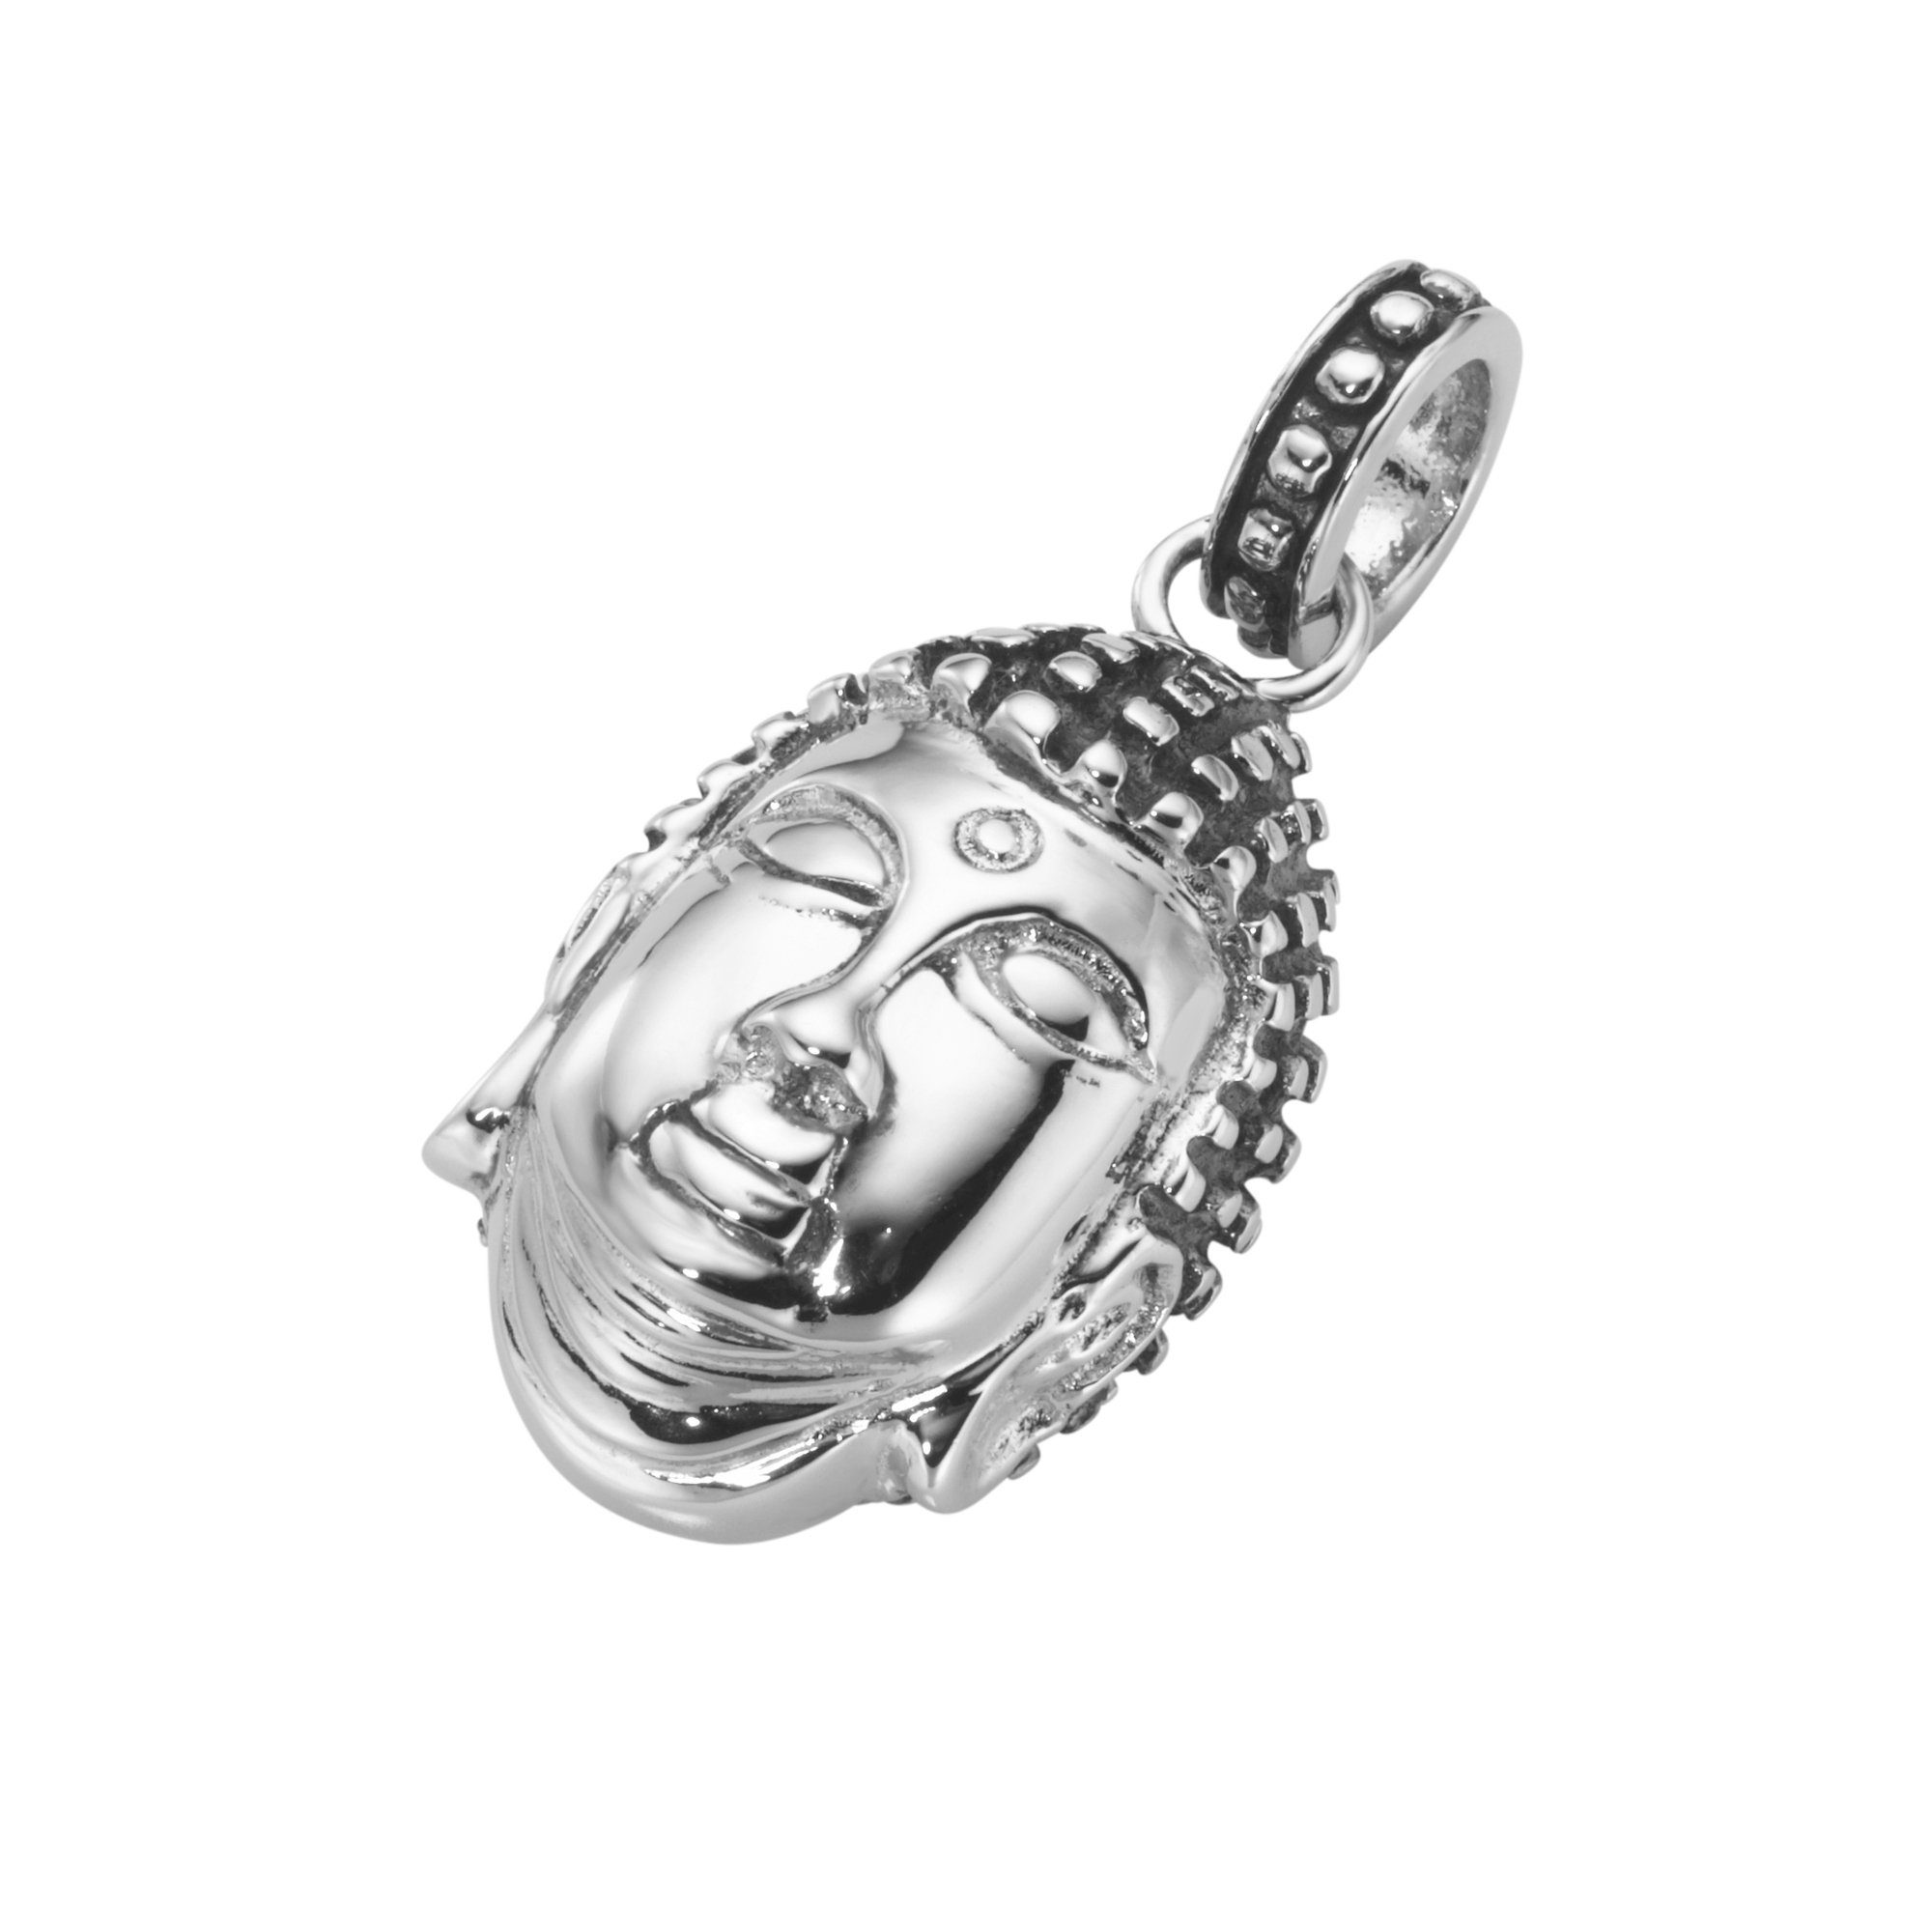 geschwärzt, MILANO Silber 925 GIORGIO MARTELLO teilweise Buddha-Kopf, Kettenanhänger